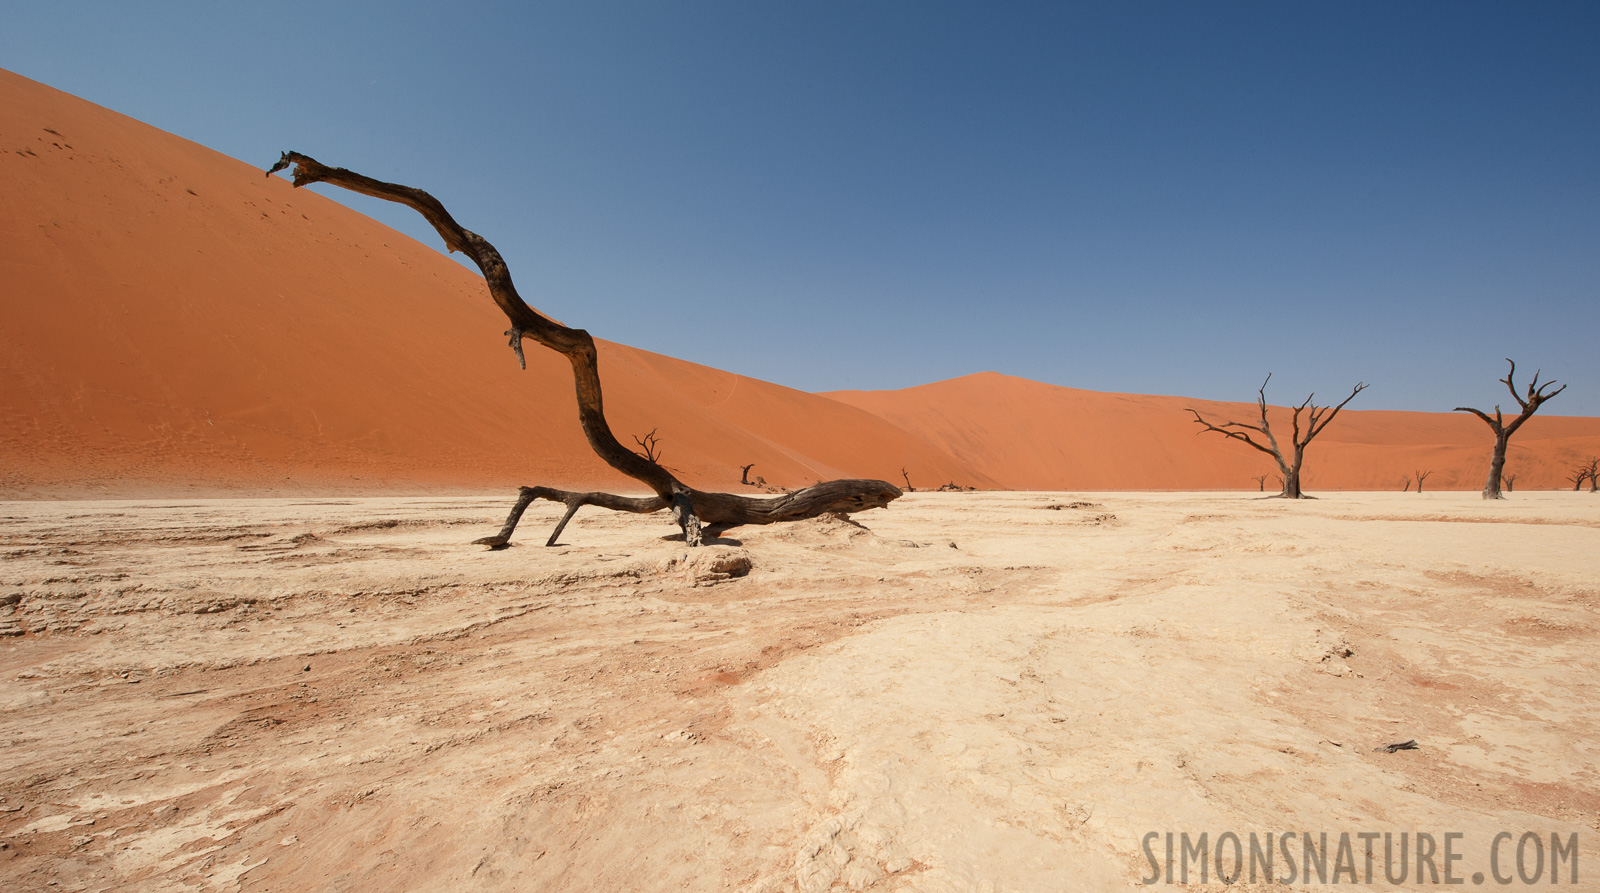 Namib-Naukluft National Park [14 mm, 1/200 sec at f / 22, ISO 400]